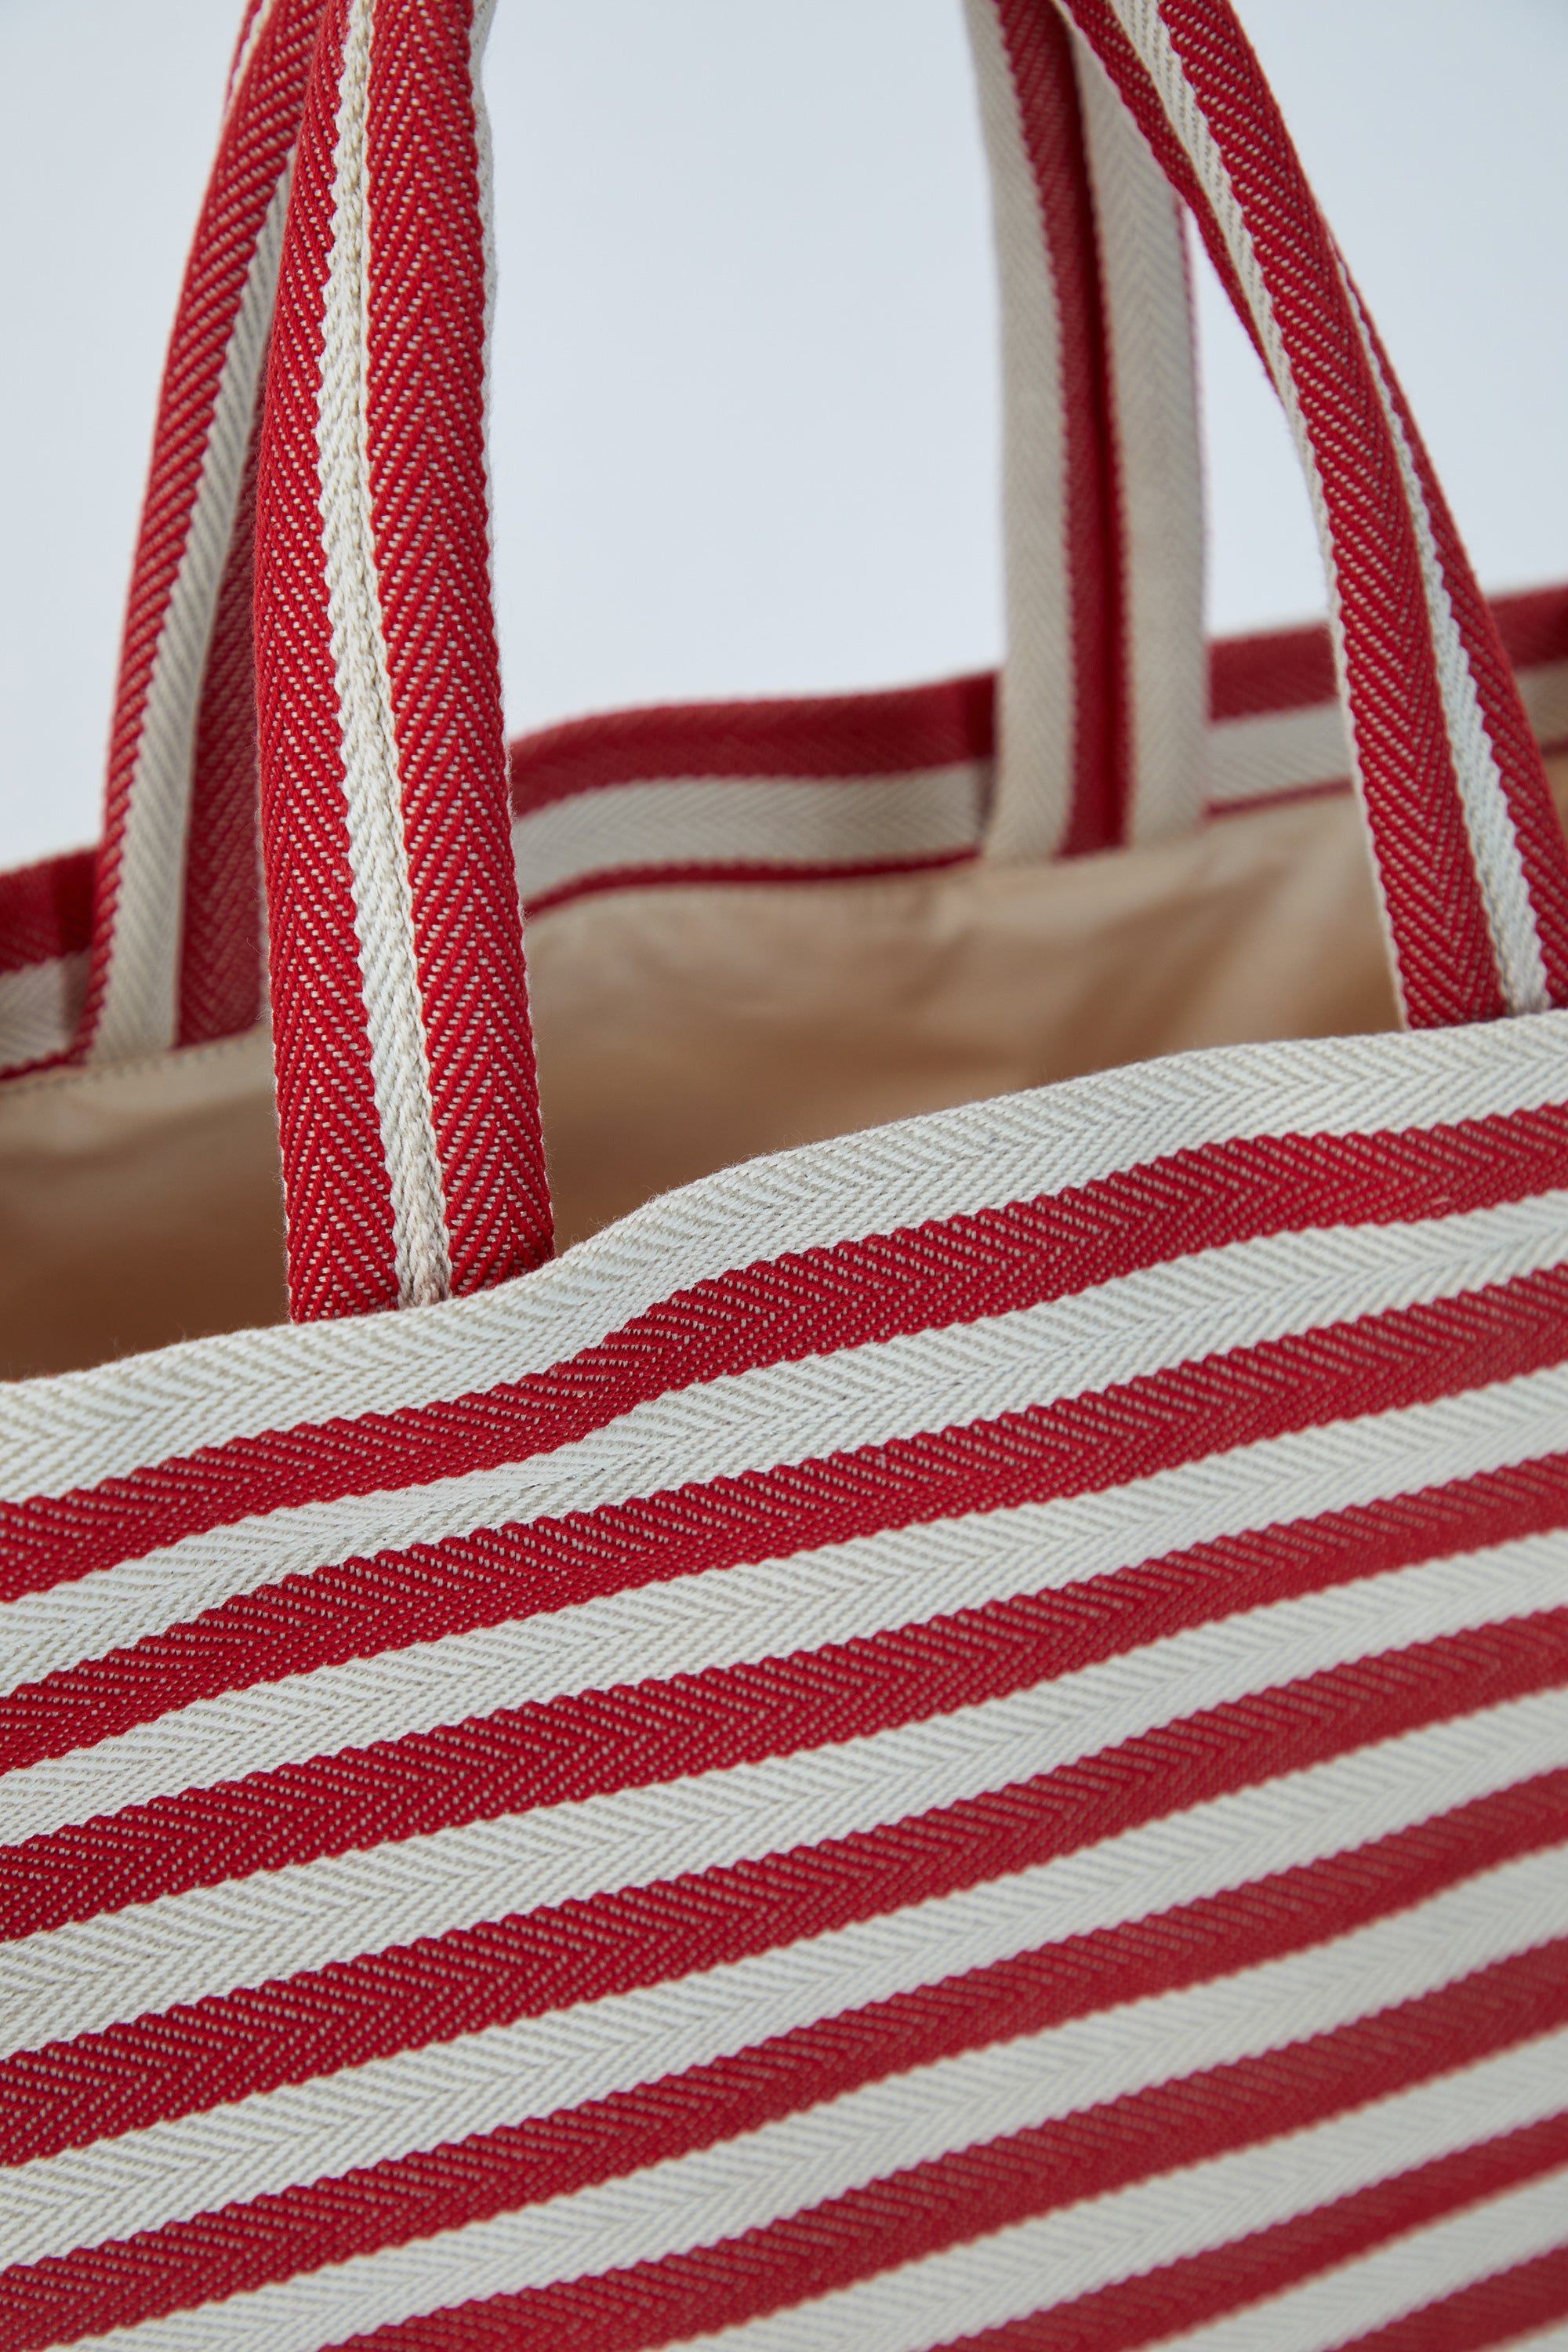 Gestreifte Canvas-Einkaufstasche – Rot und Weiß